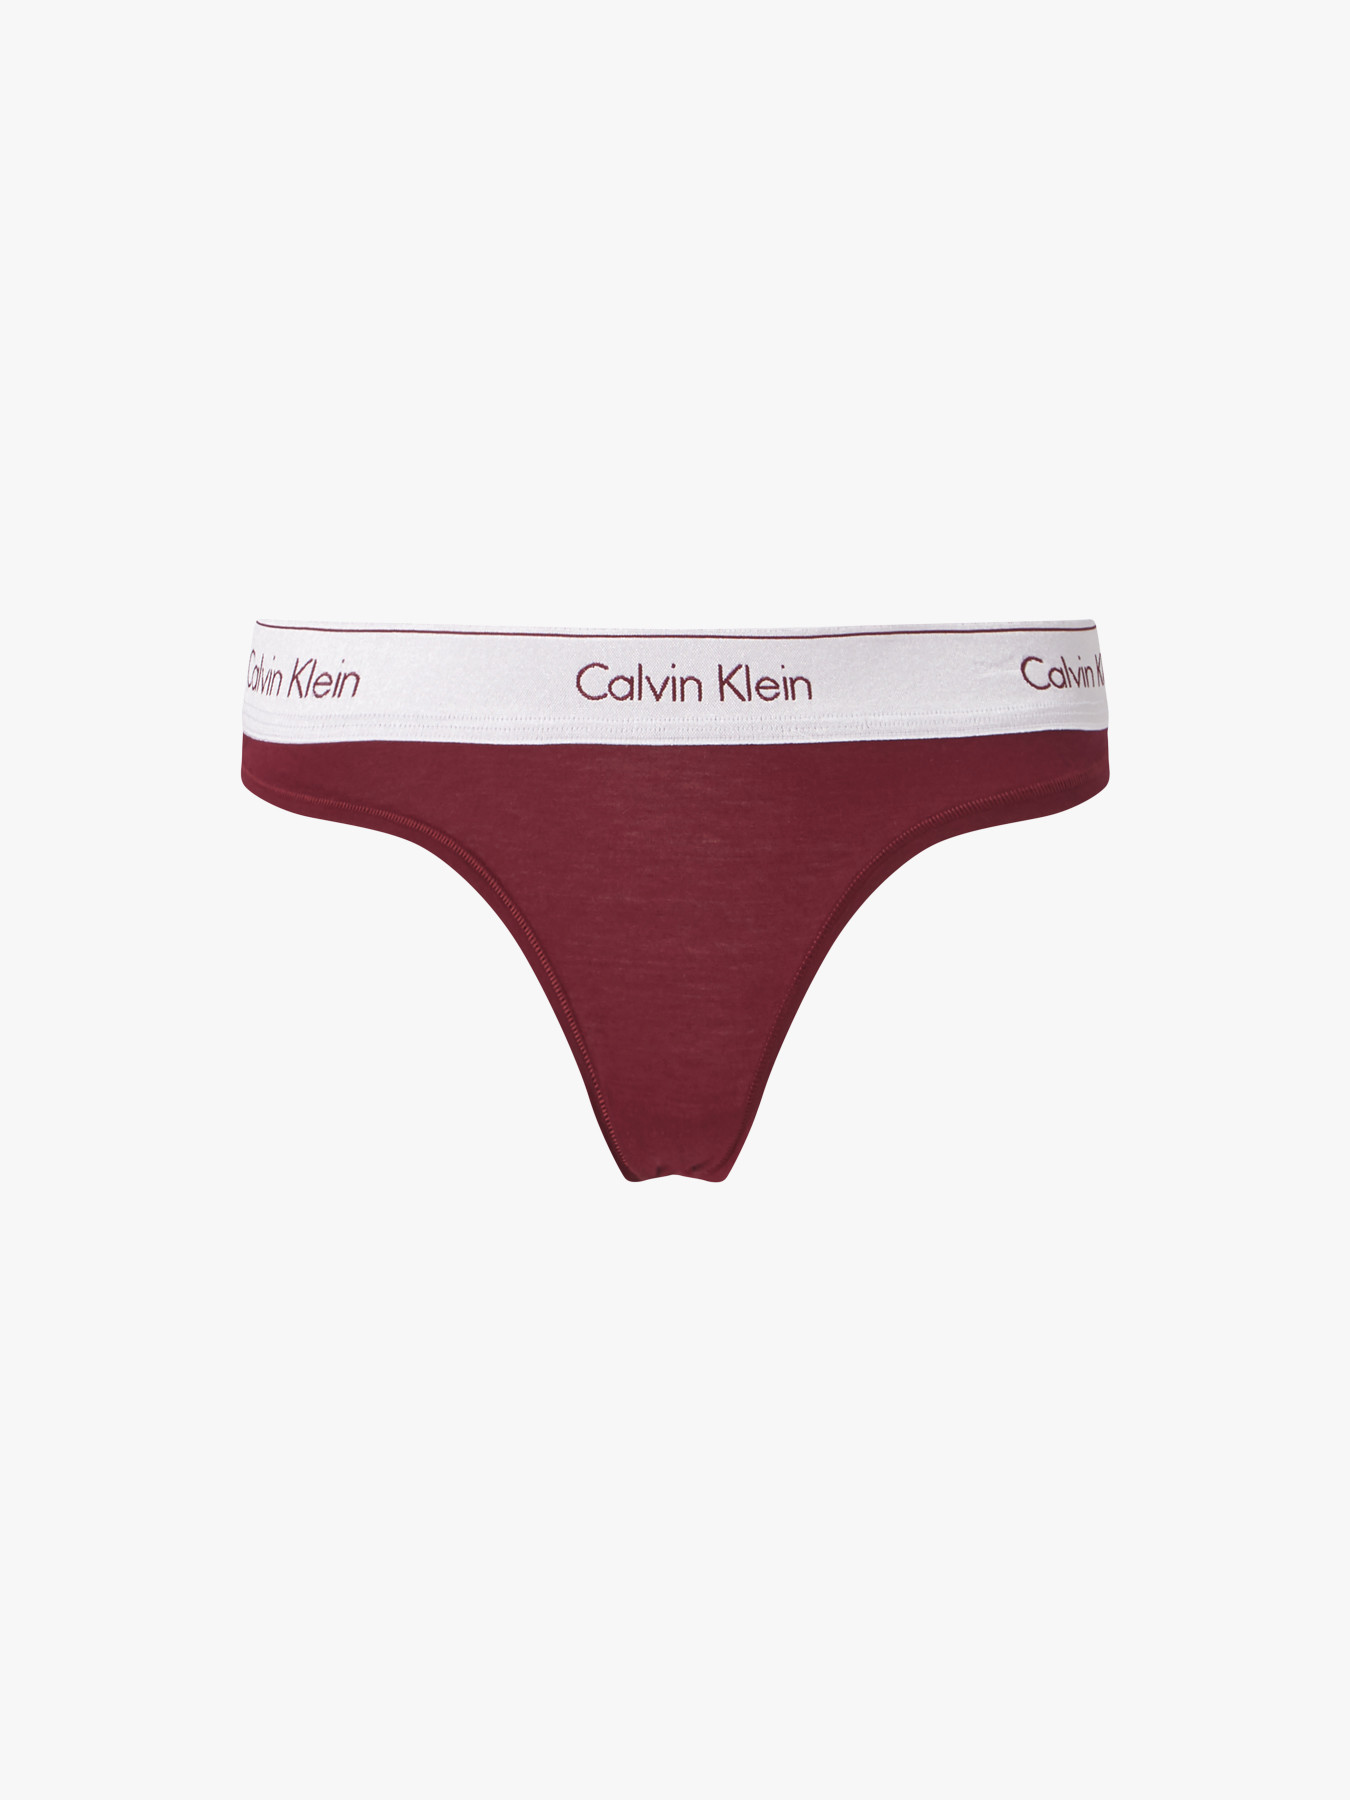 Calvin Klein Underwear Modern Cotton Metallic Bikini | Briefs | Fenwick